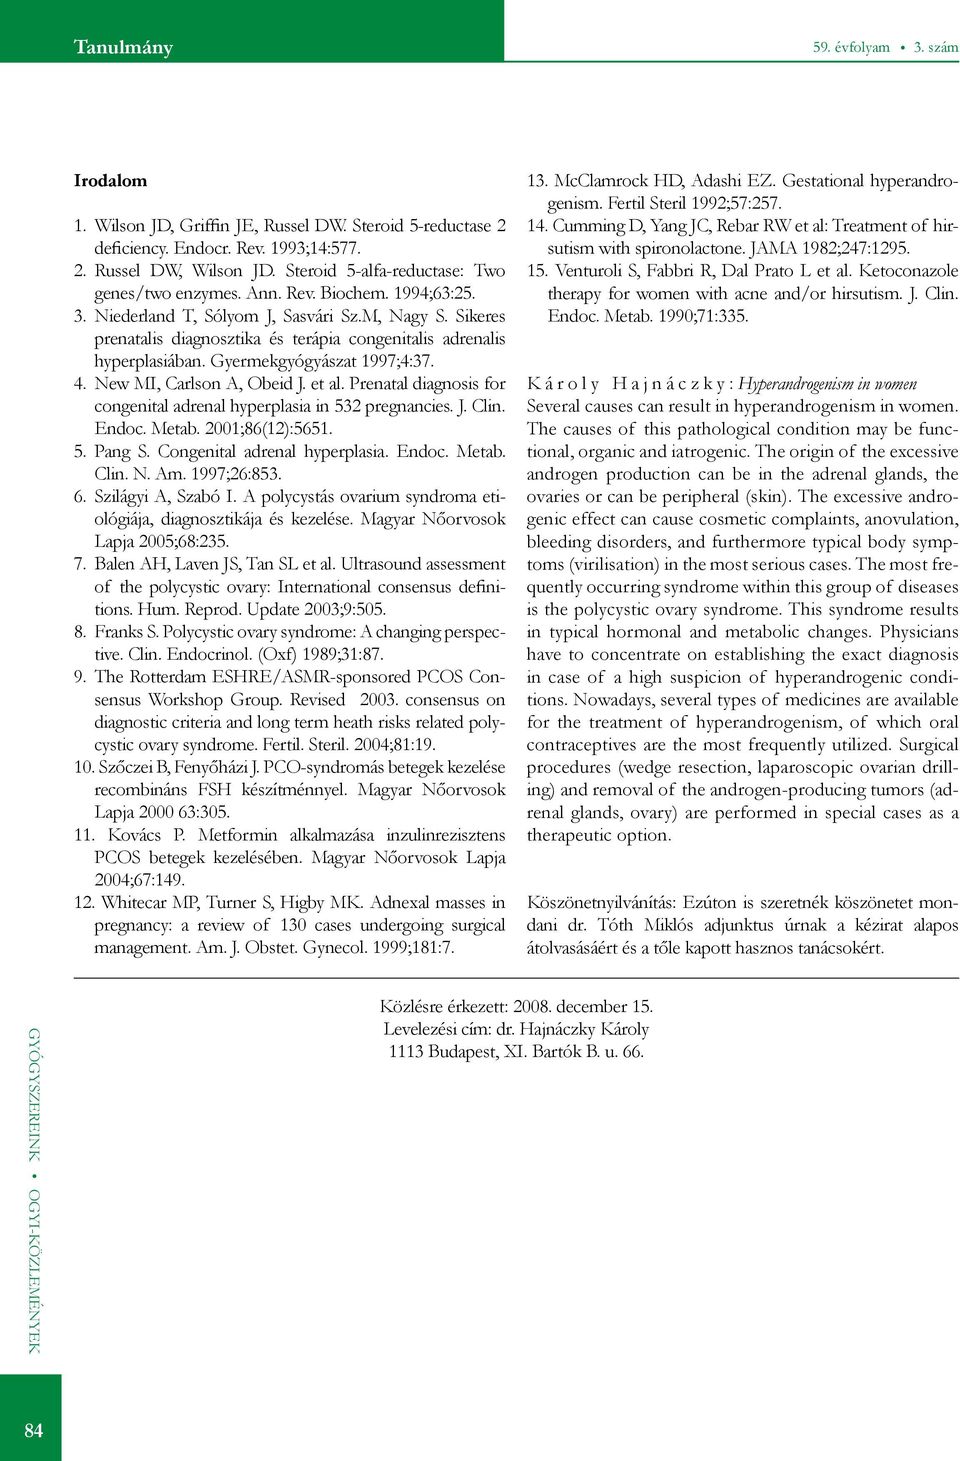 Sikeres prenatalis diagnosztika és terápia congenitalis adrenalis hyperplasiában. Gyermekgyógyászat 1997;4:37. 4. New MI, Carlson A, Obeid J. et al.